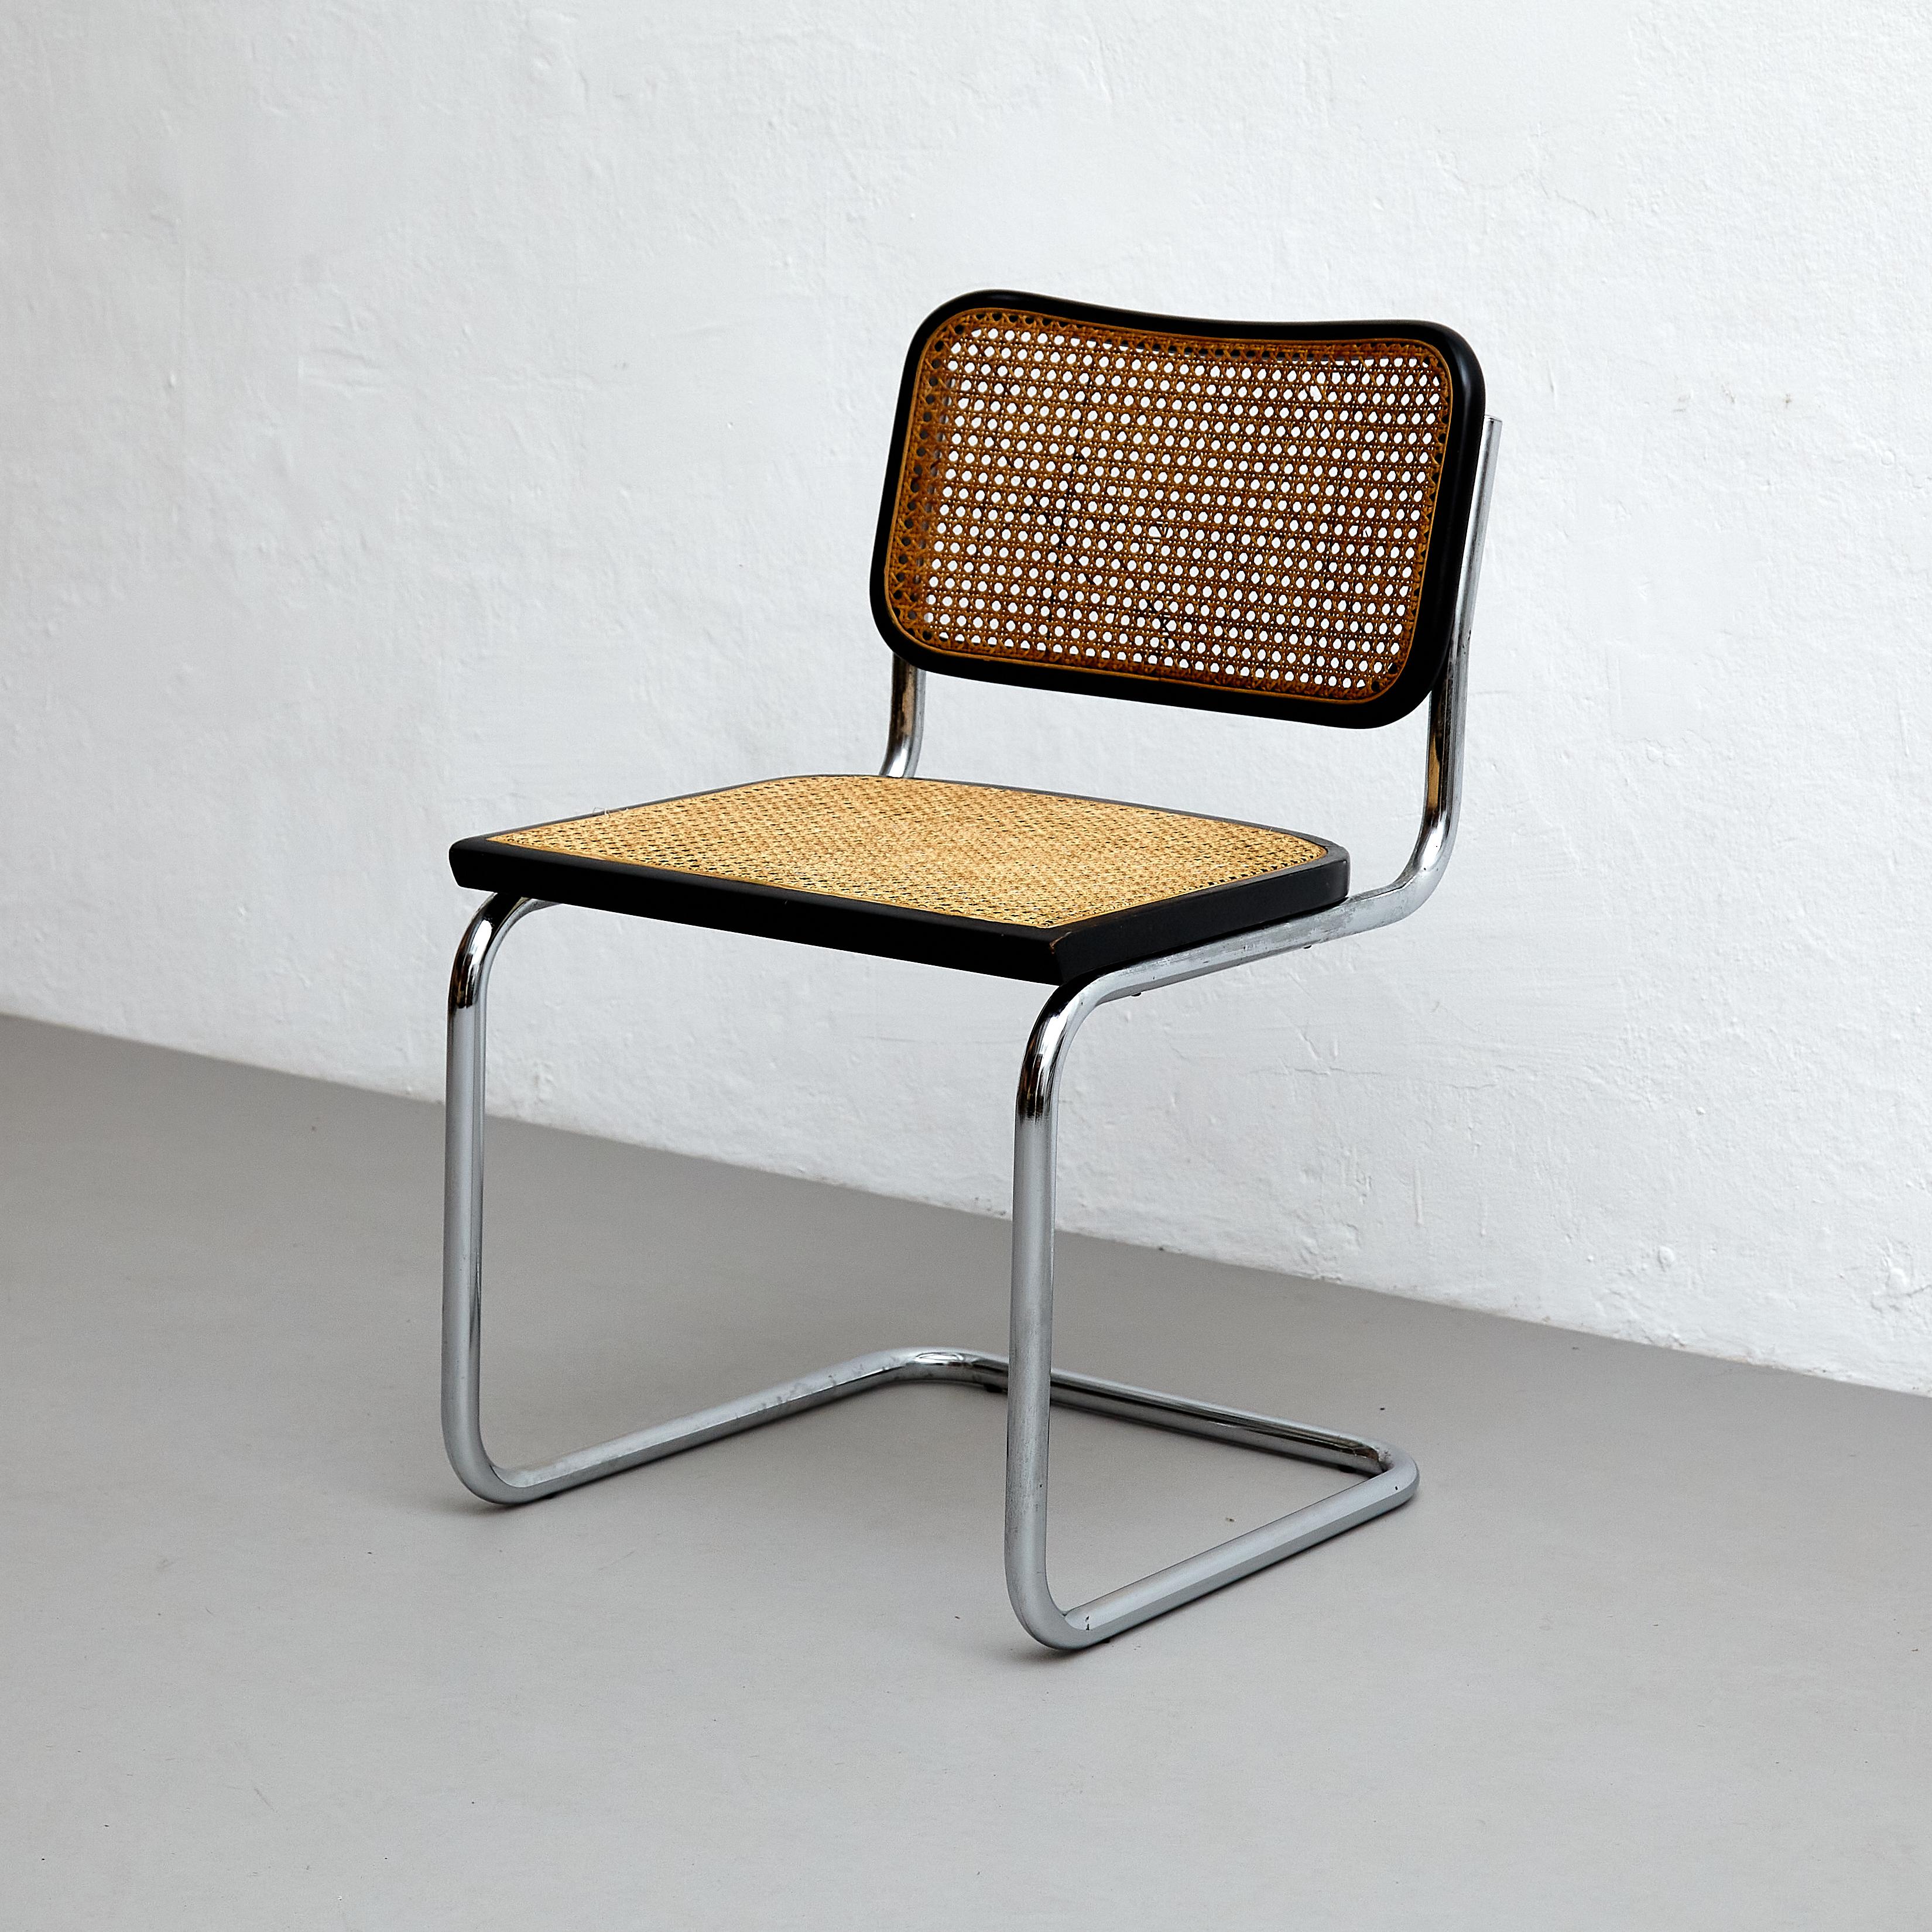 Cet ensemble de quatre chaises Bauhaus, conçu par Marcel Breuer, est un véritable témoignage du mouvement emblématique du Bauhaus au XXe siècle. Fabriquées en Italie par un fabricant inconnu vers 1960, ces chaises présentent une combinaison unique